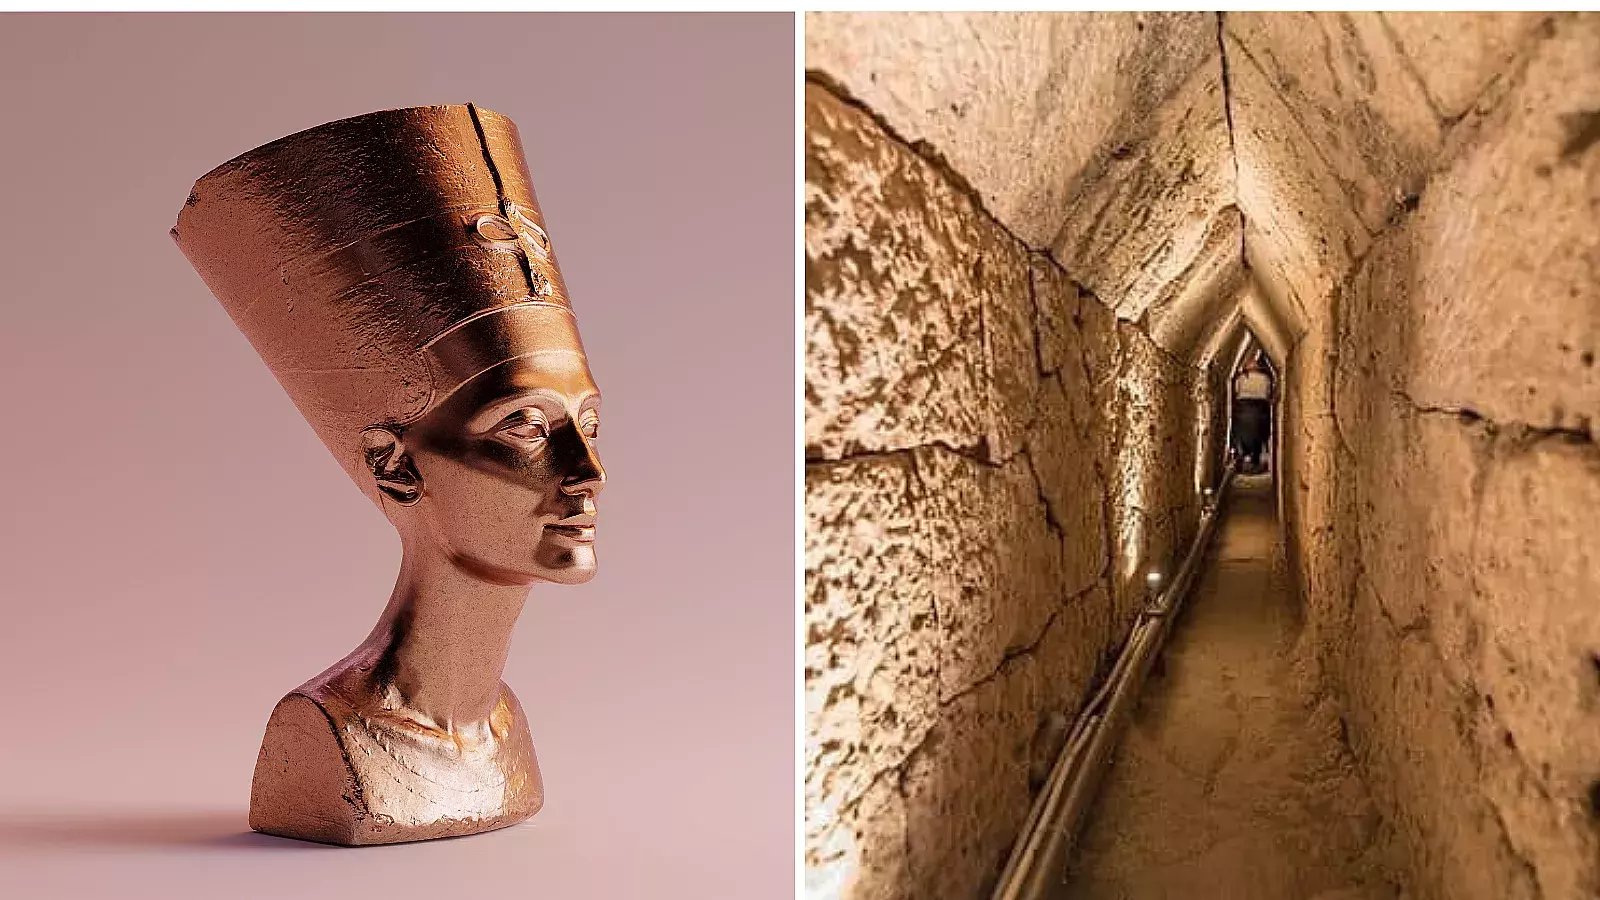 FOTOS: Arqueólogos descubren túnel que podría conducir a la tumba perdida de la reina Cleopatra